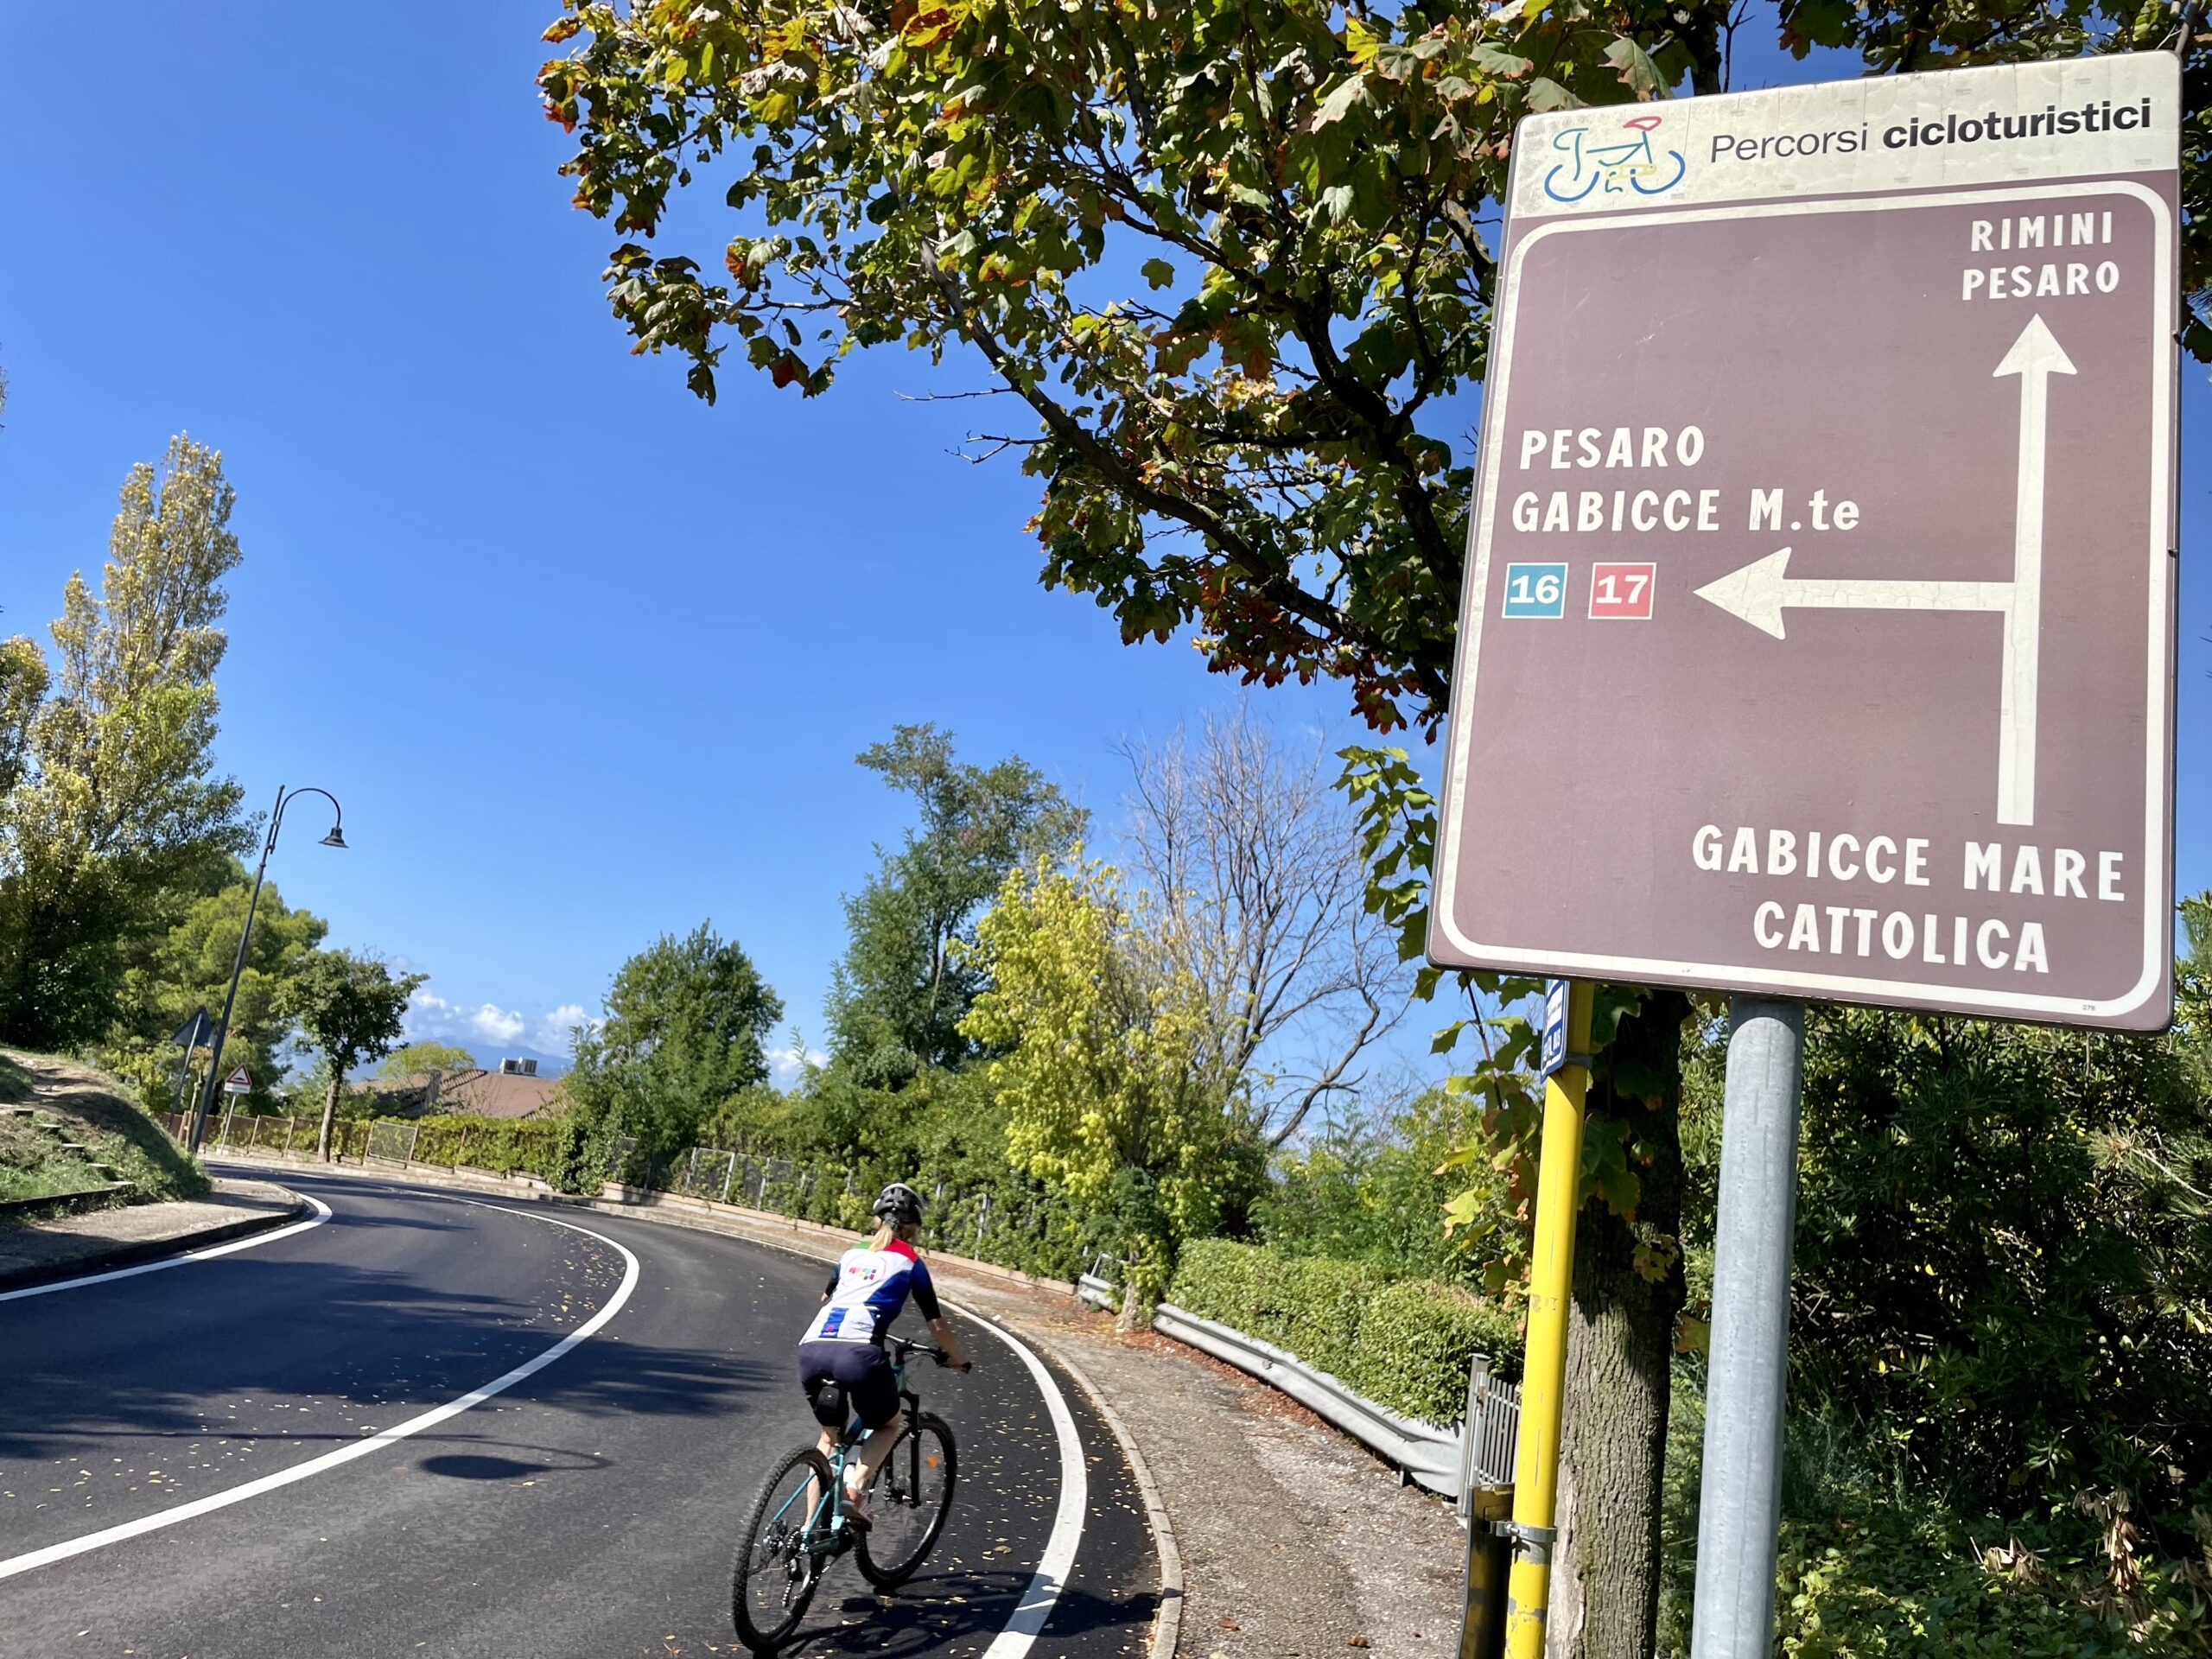 We Włoszech zadbano o właściwe oznakowanie dla rowerzystów